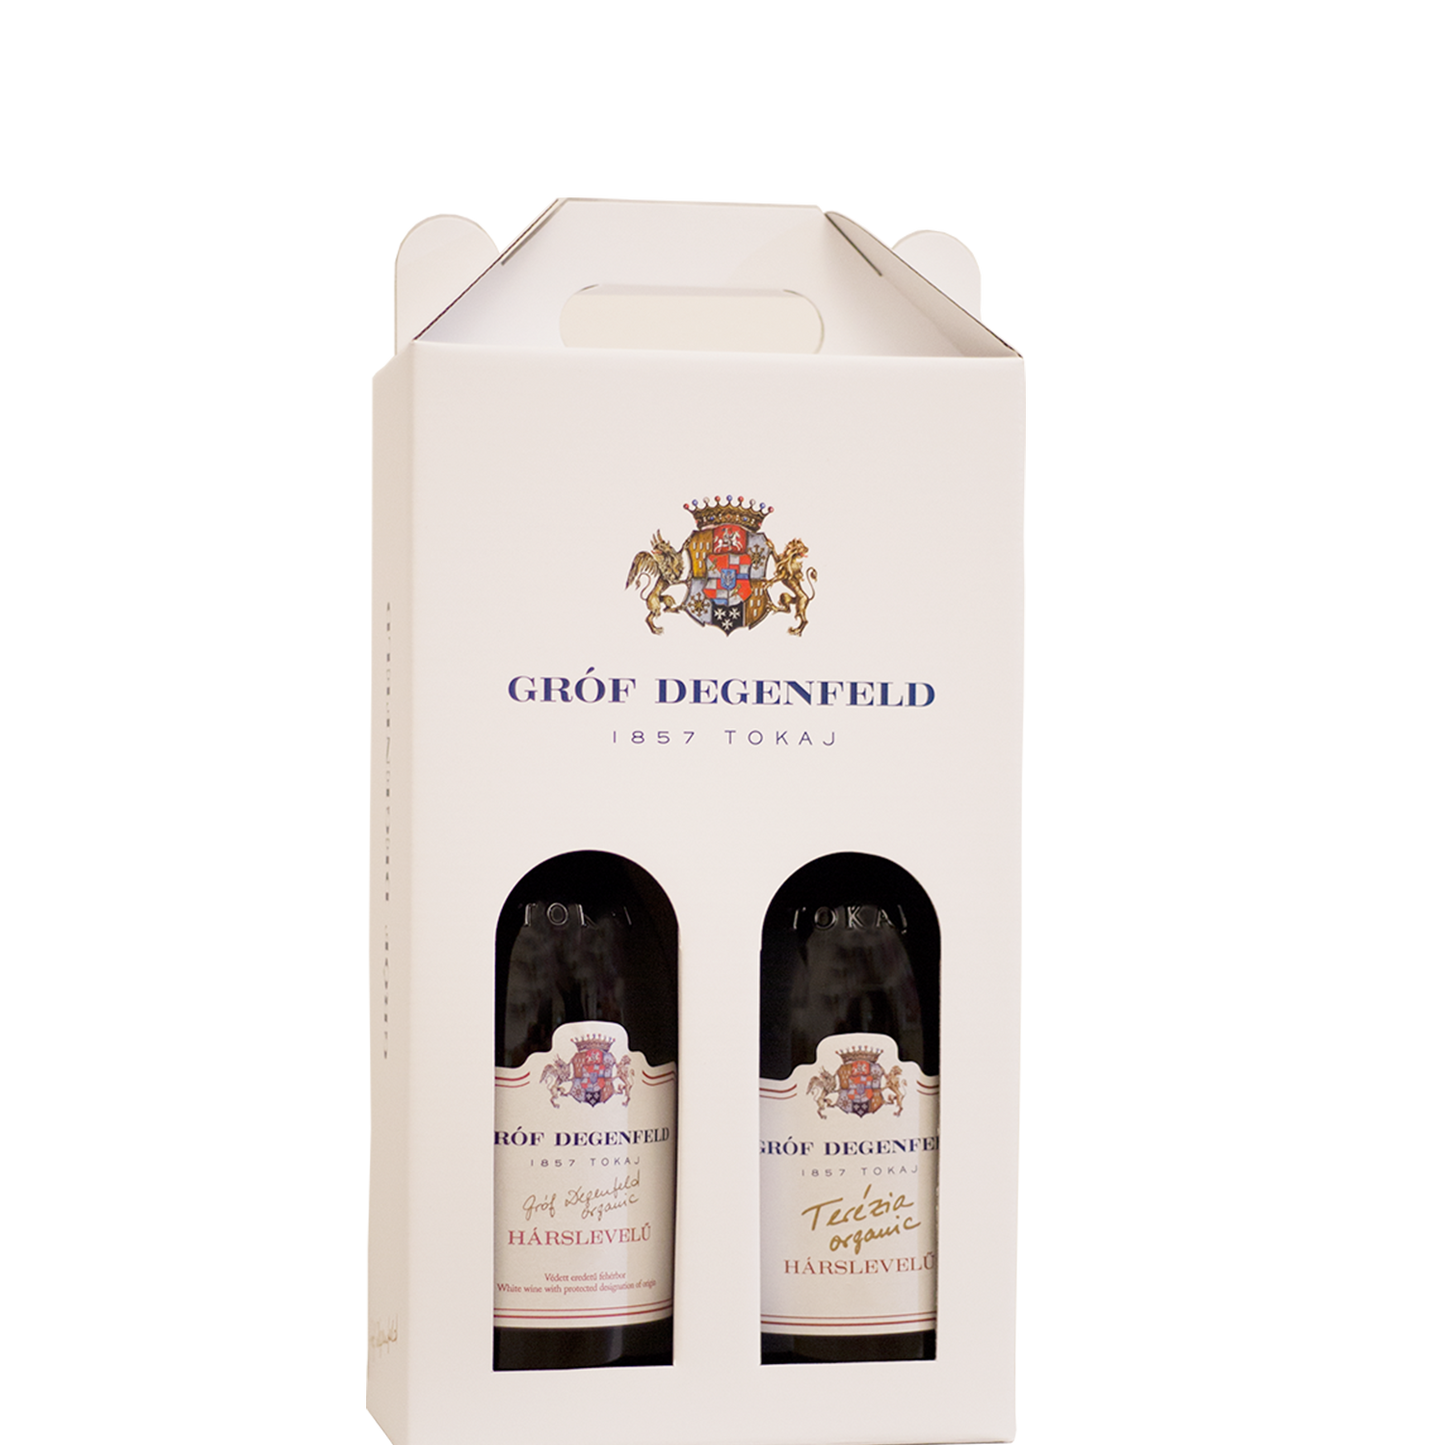 Gróf Degenfeld gift box for 0,5 l and 0,75 l bottles - for 2 bottles